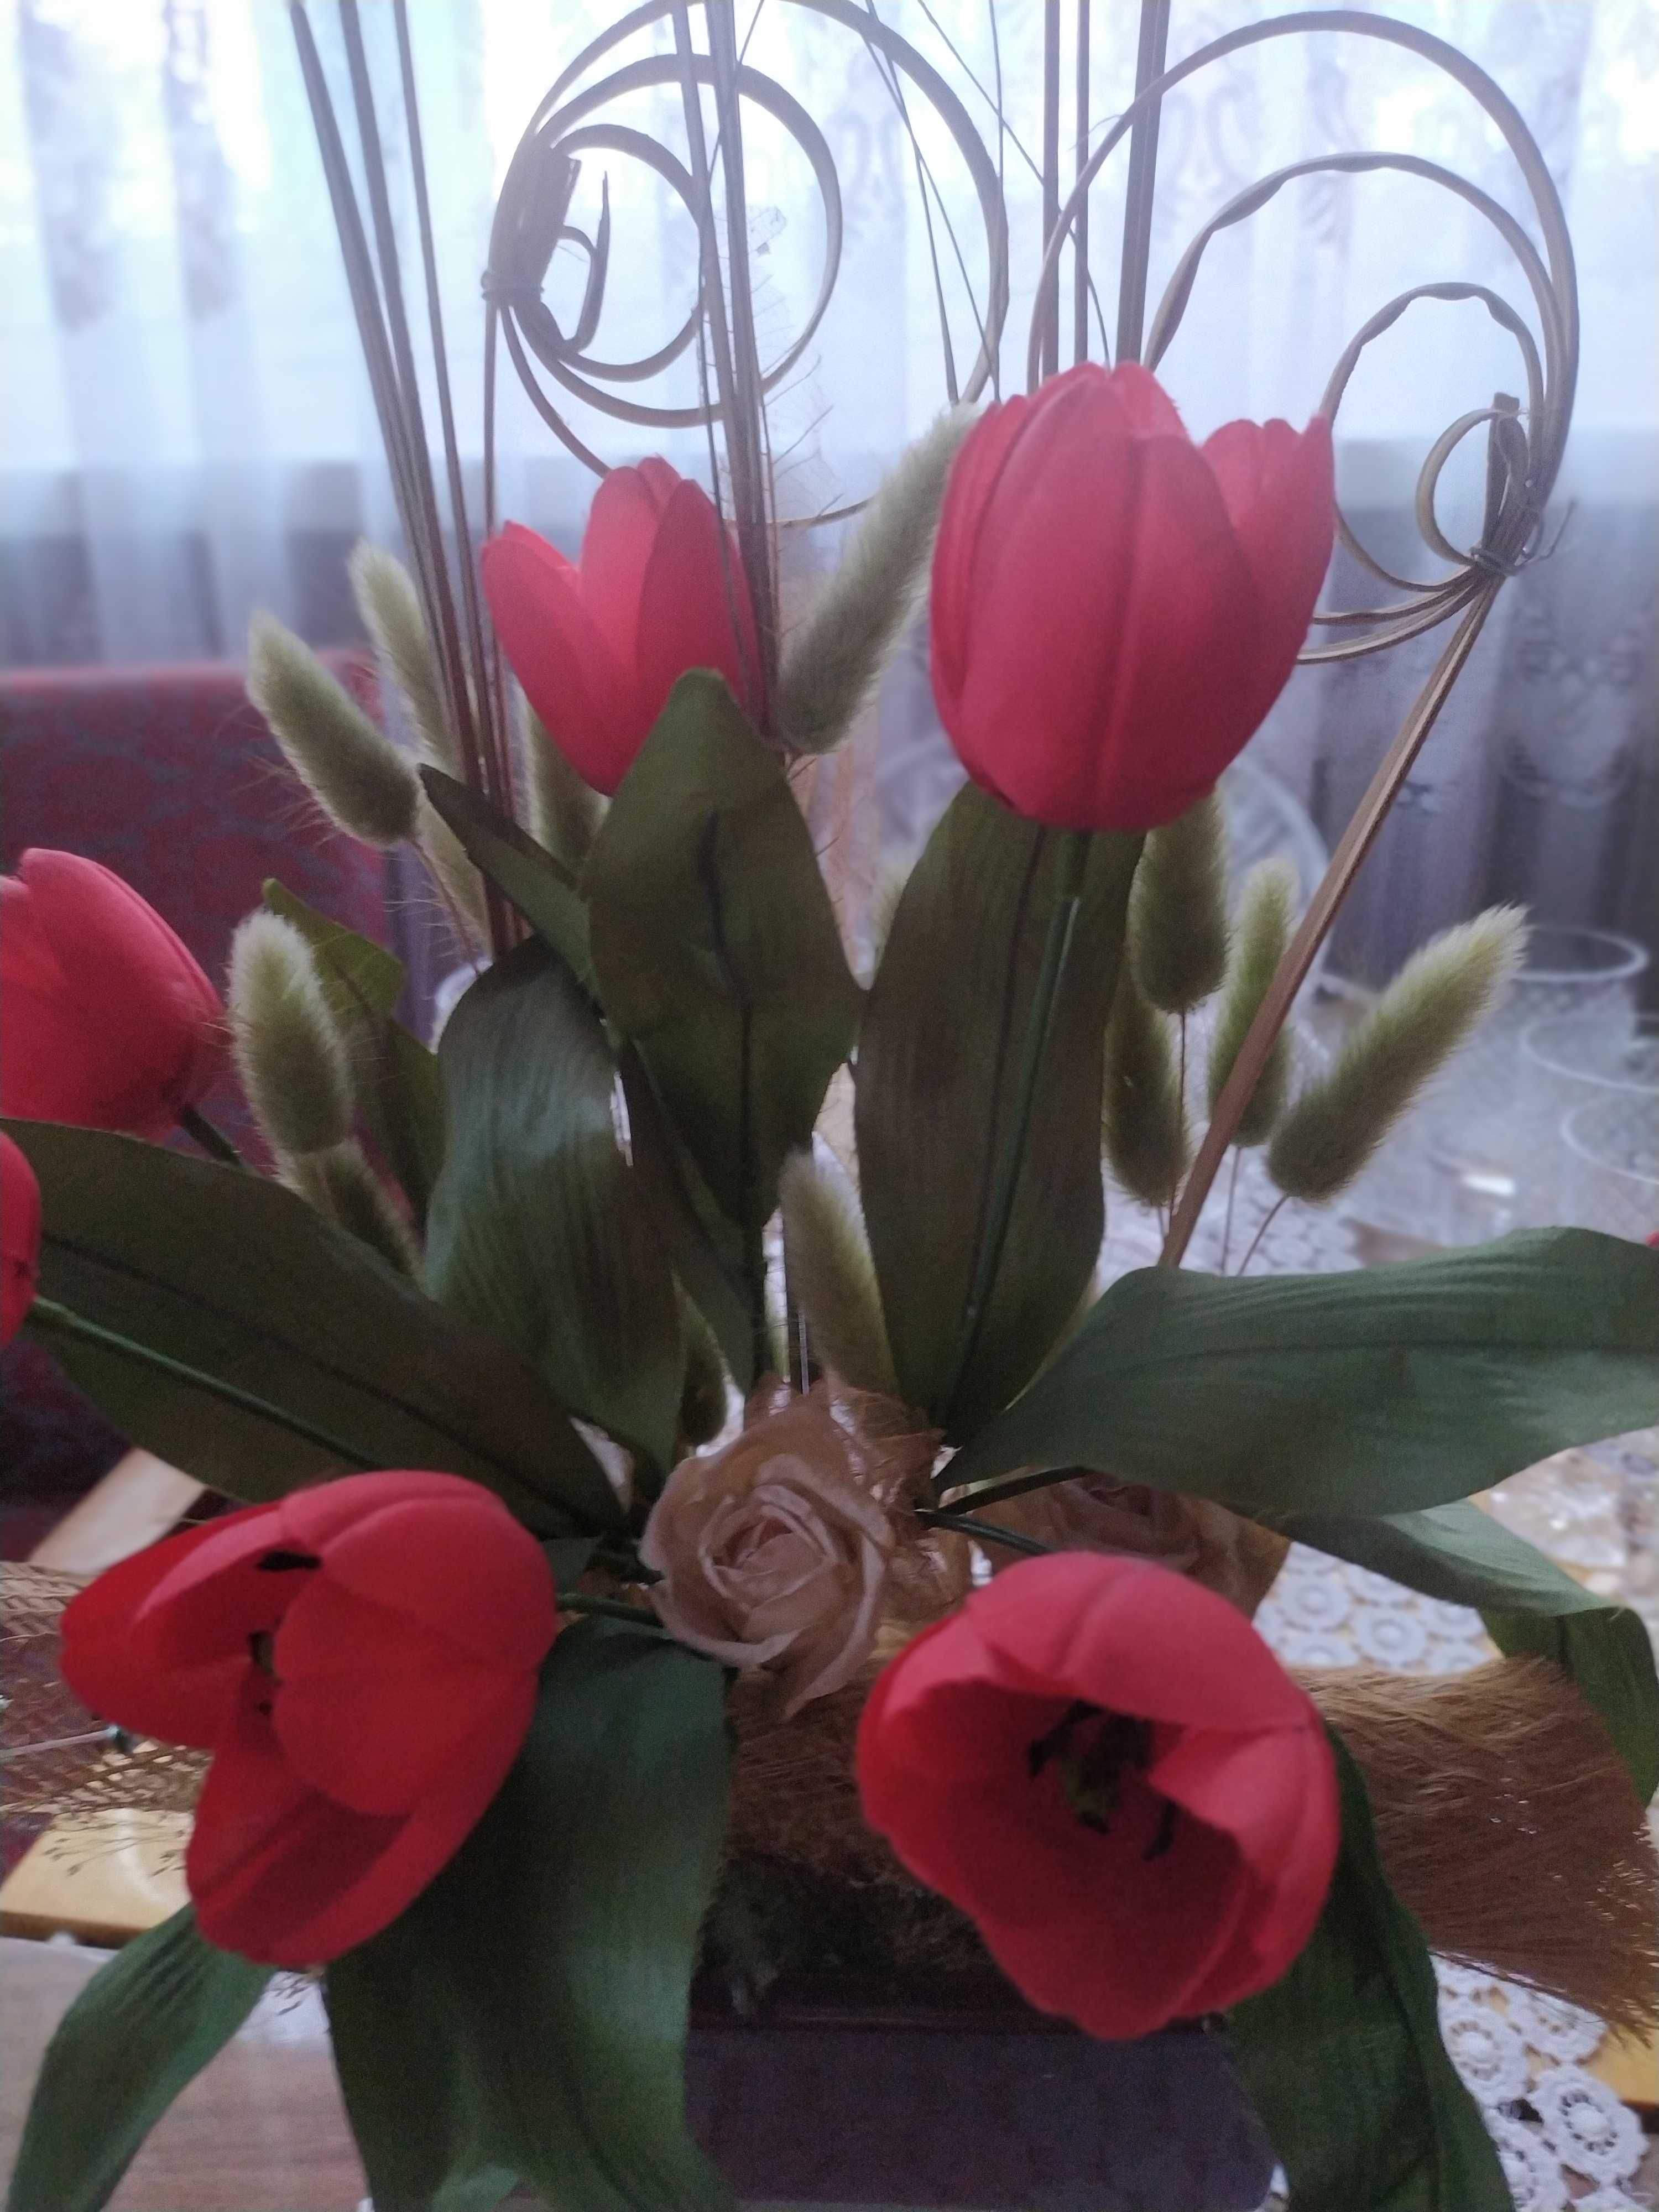 Kompozycja kwiatowa w doniczce ceramicznej z pracowni florystycznej